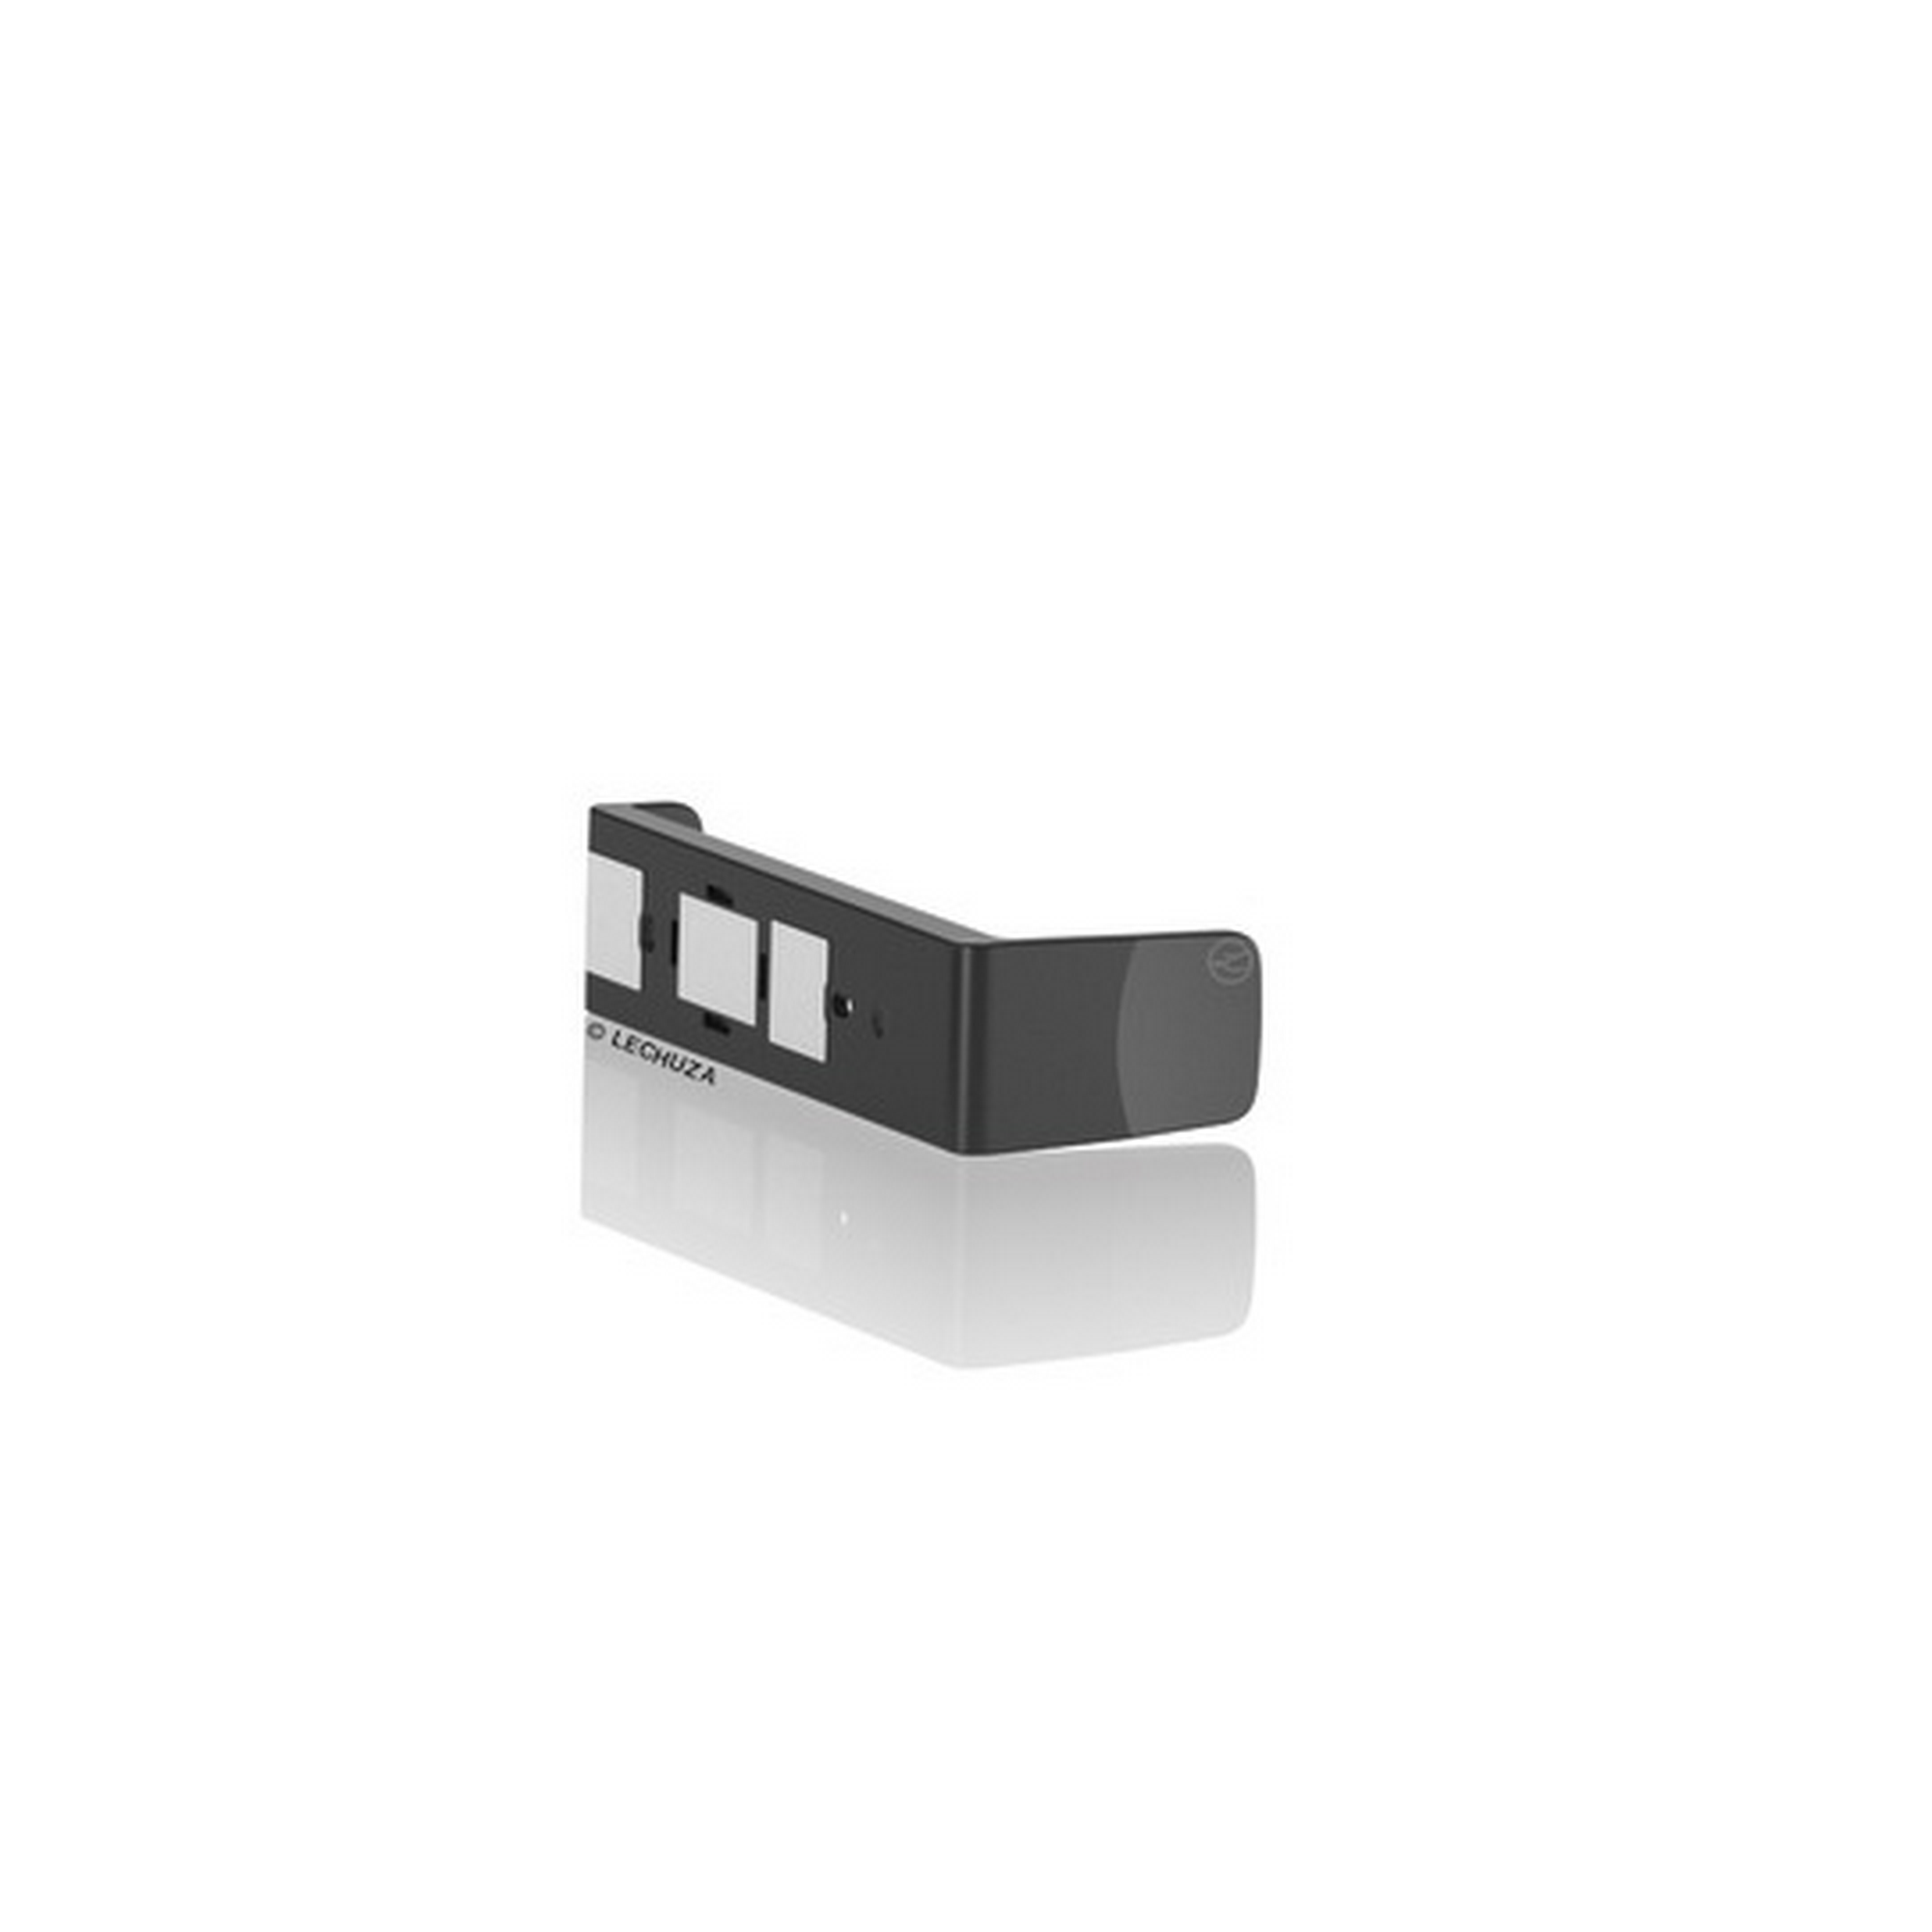 Magnethalter für Pflanztöpfe 'CUBE' schwarz 14 x 4 x 6 cm + product picture